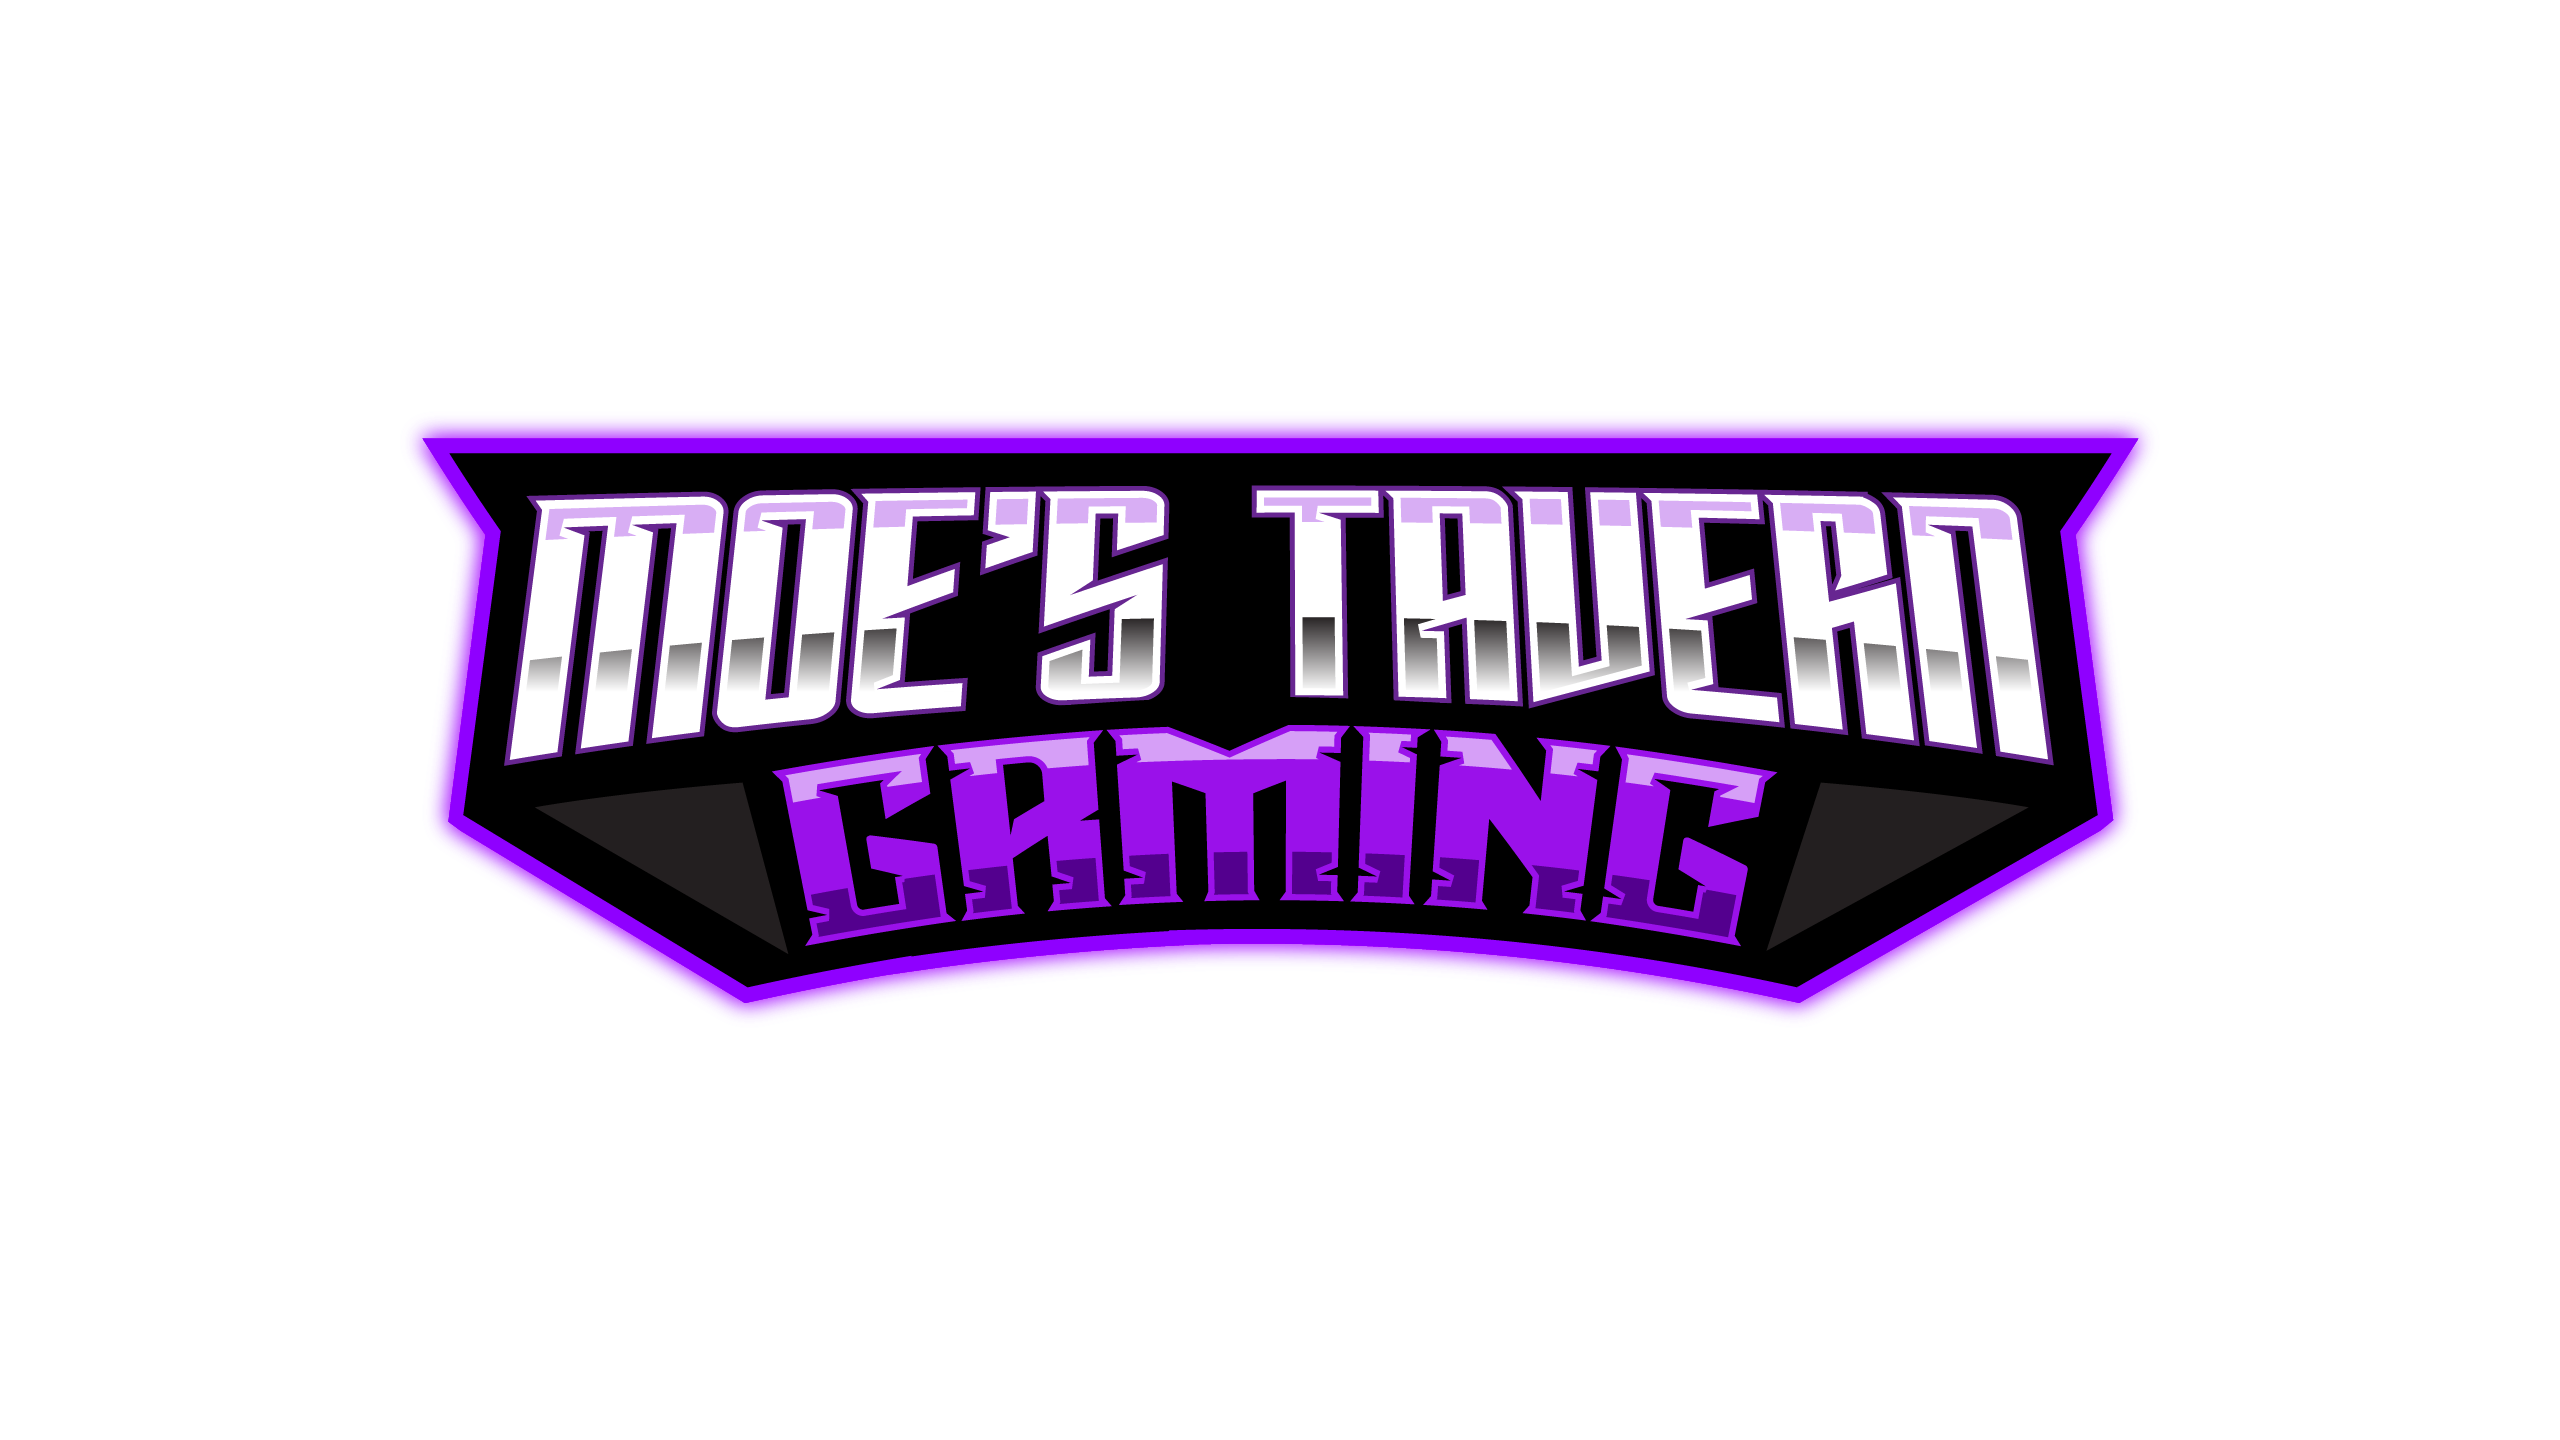 Moe's Tavern Gaming